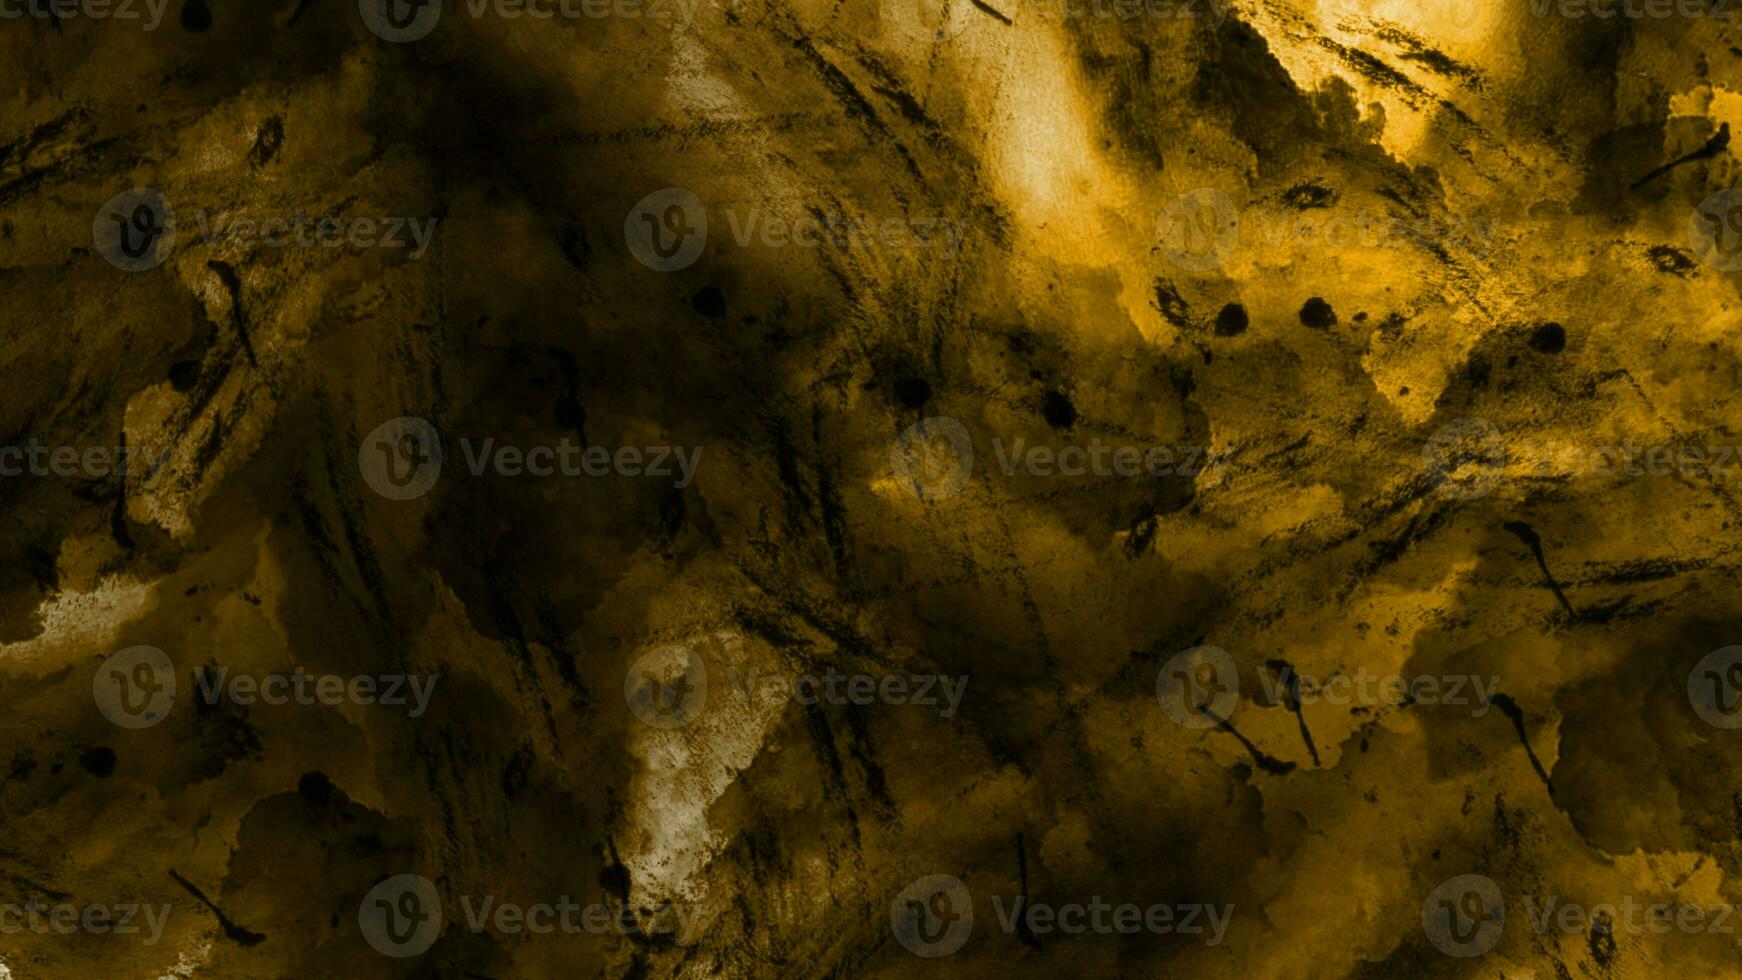 gouden abstract zonnig achtergrond. digitaal schilderij van goud structuur achtergrond. waterverf achtergrond met grunge. gloeiend gouden achtergrond. donker gouden steen beton papier structuur foto